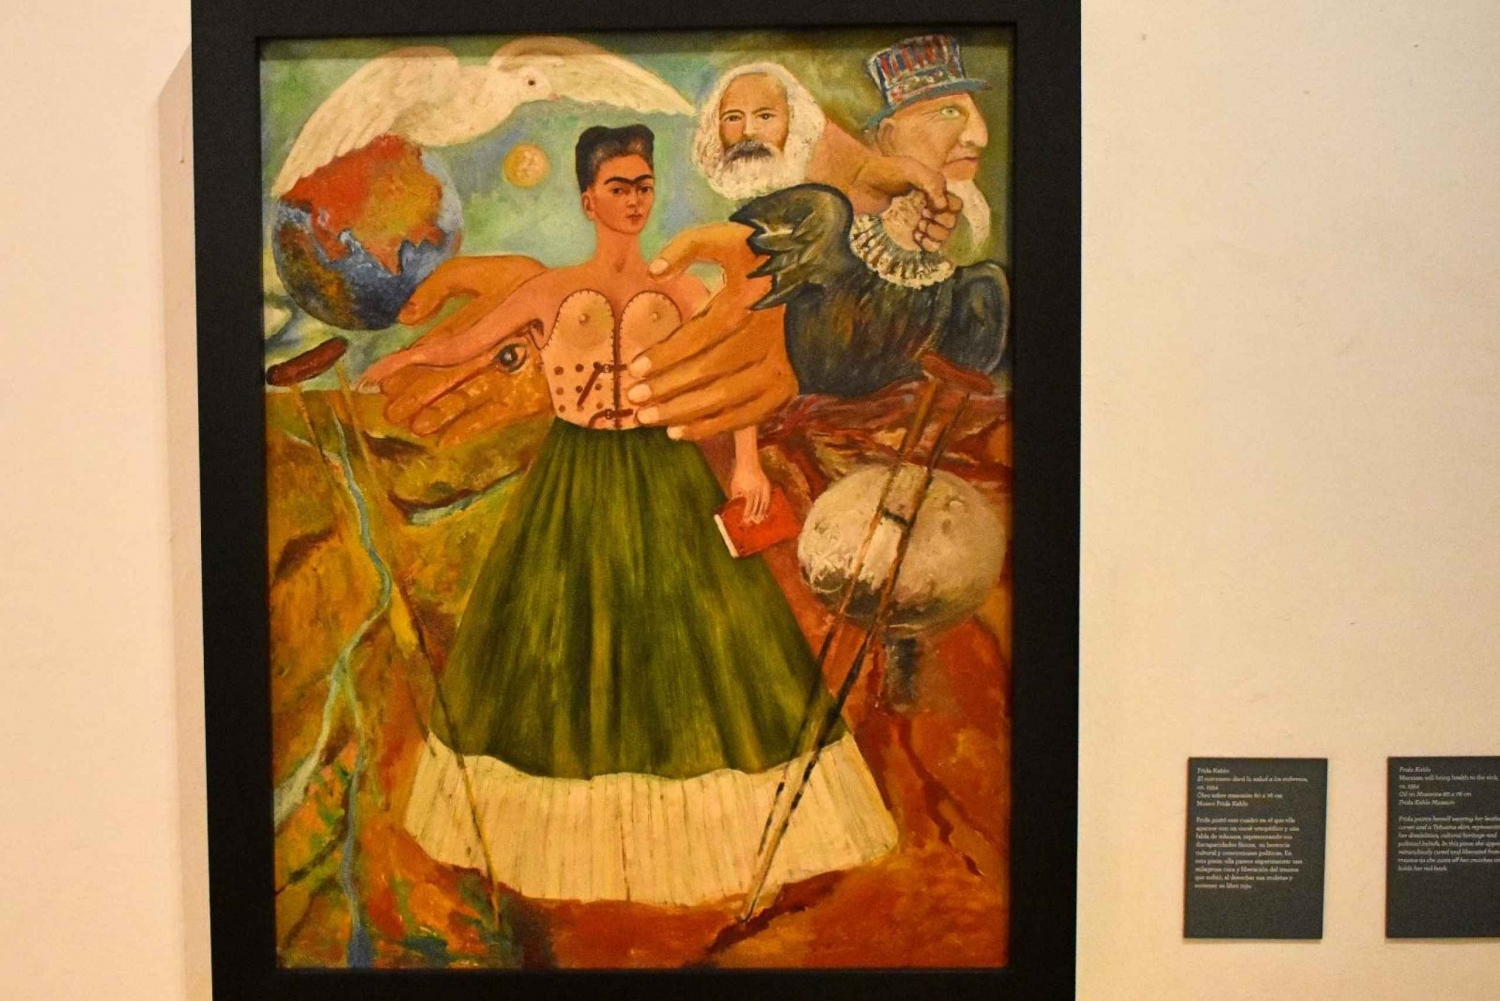 Ciudad de México: La ruta artística de Frida Kahlo y Diego Rivera